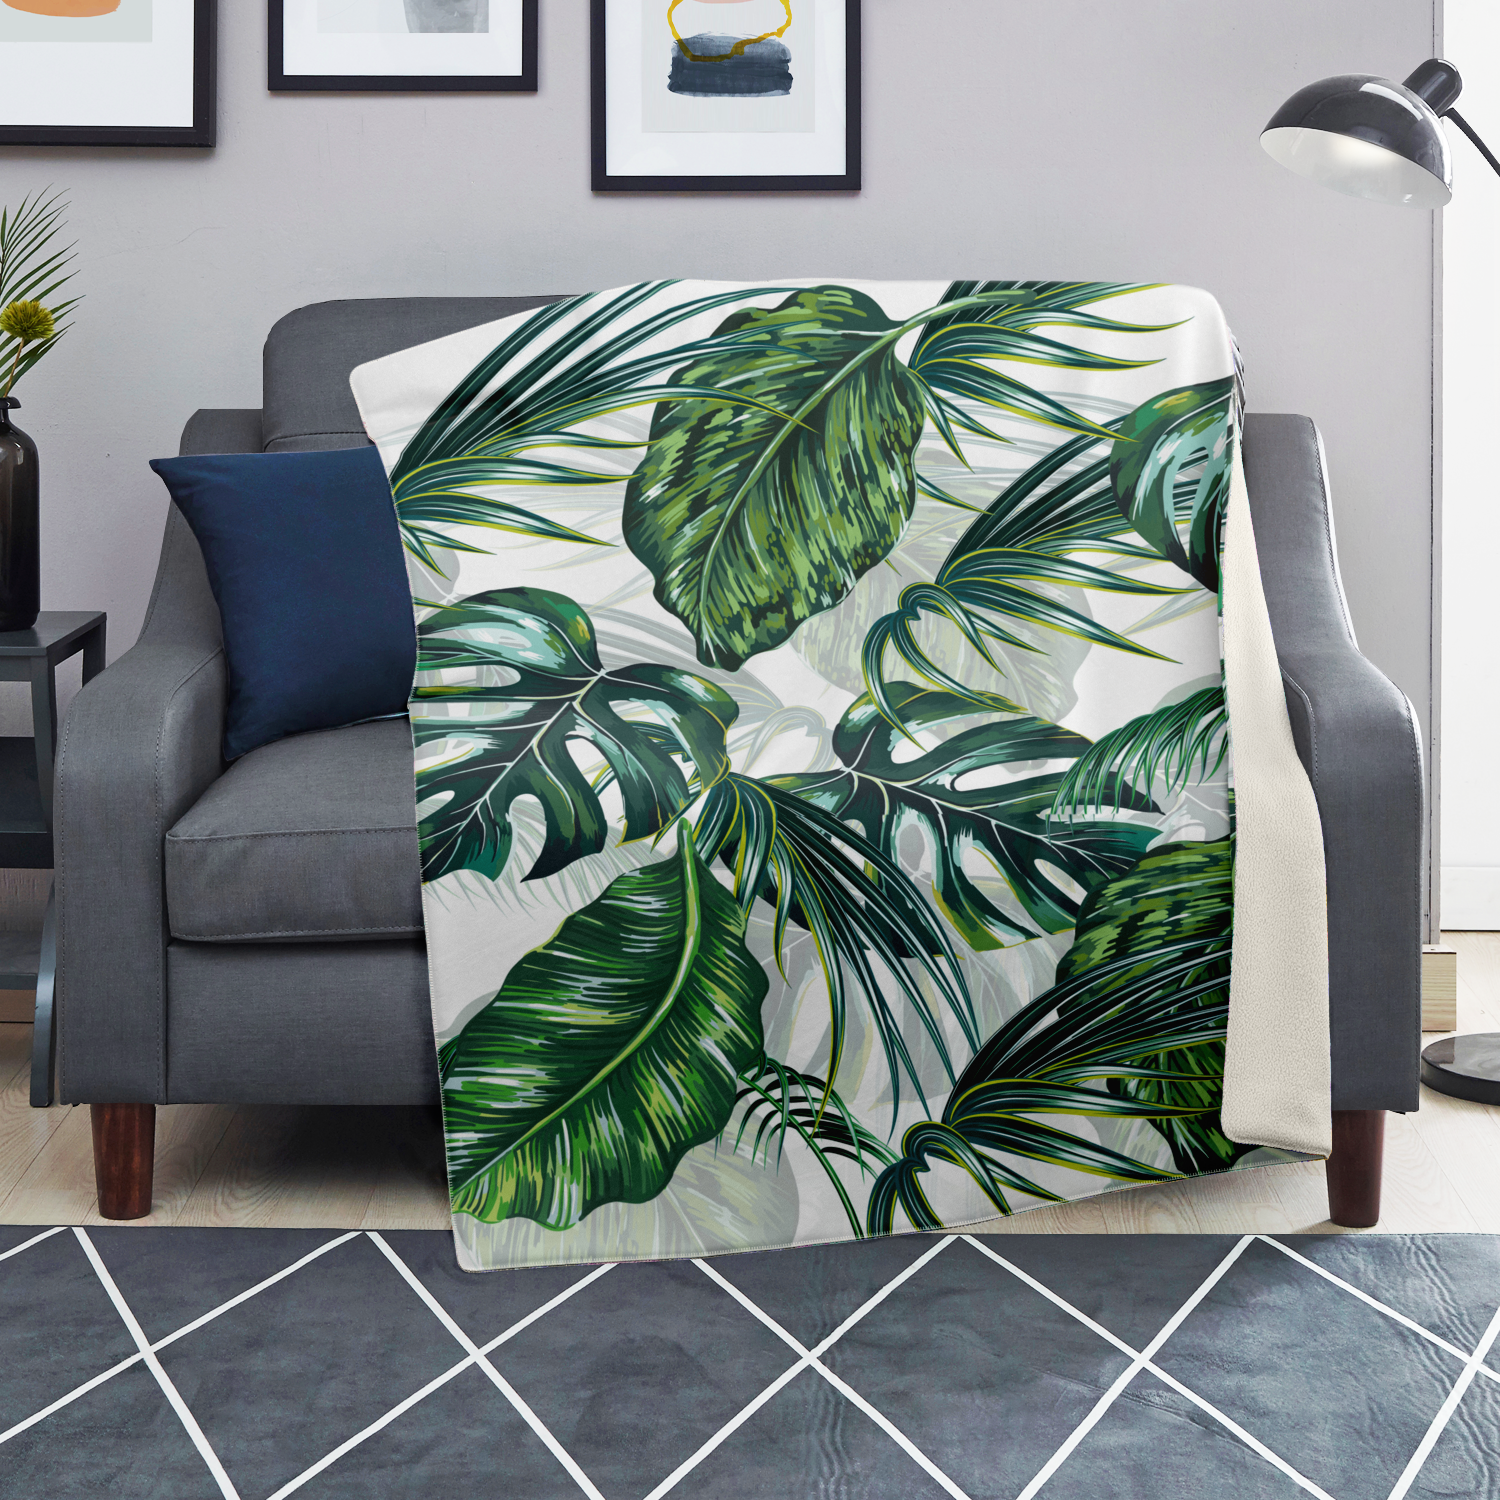 Tropical Leaves Blanket